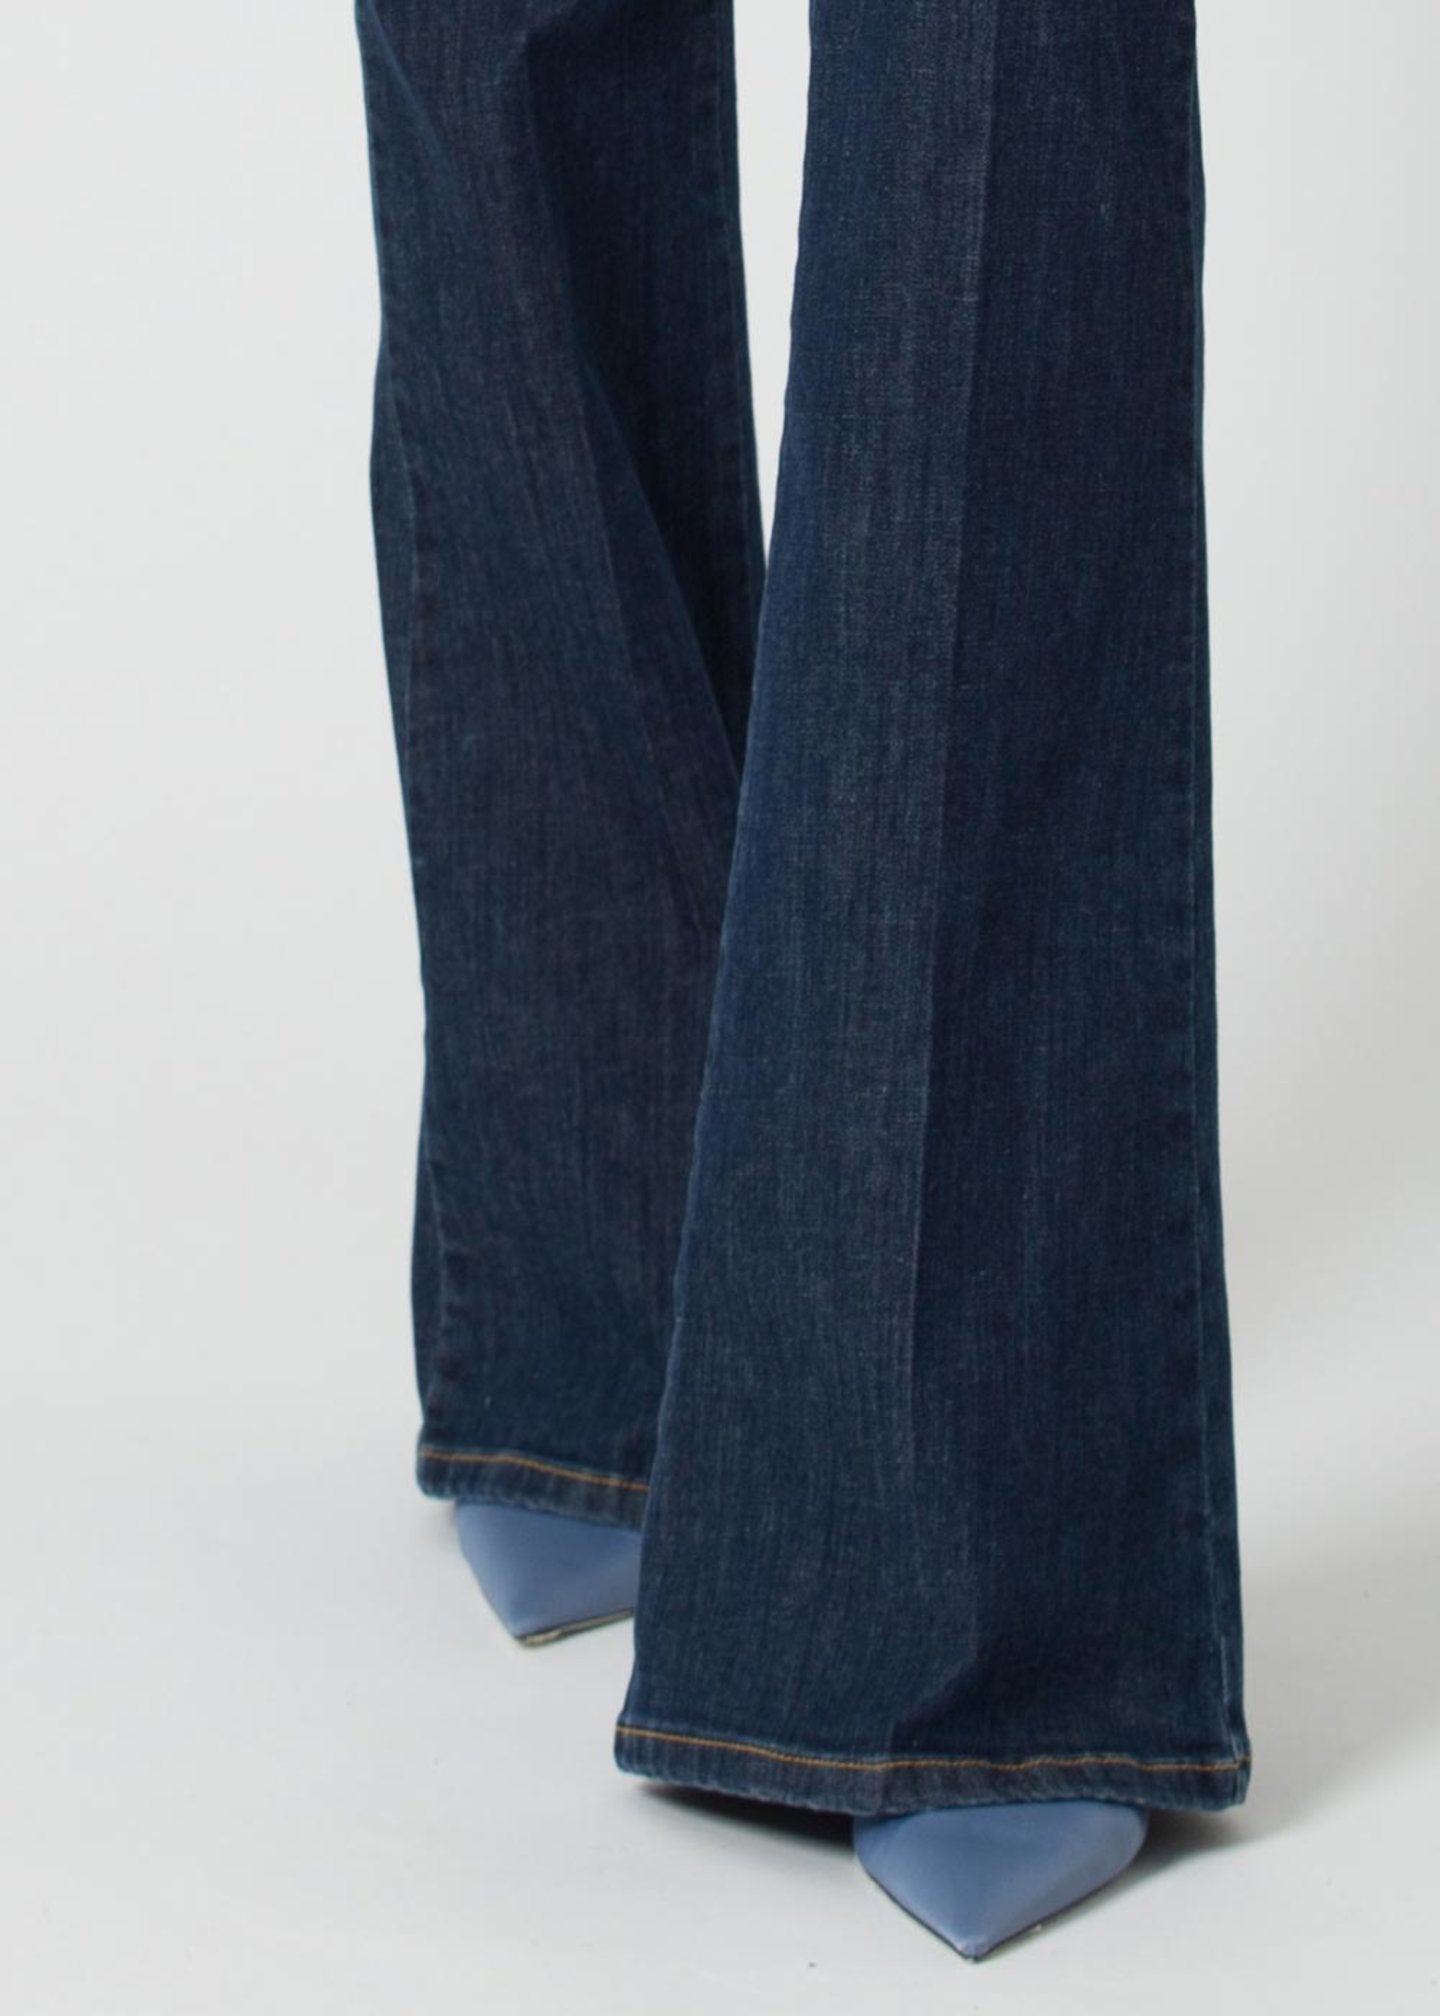 Jeans Kocca a Zampa / Jeans - Ideal Moda